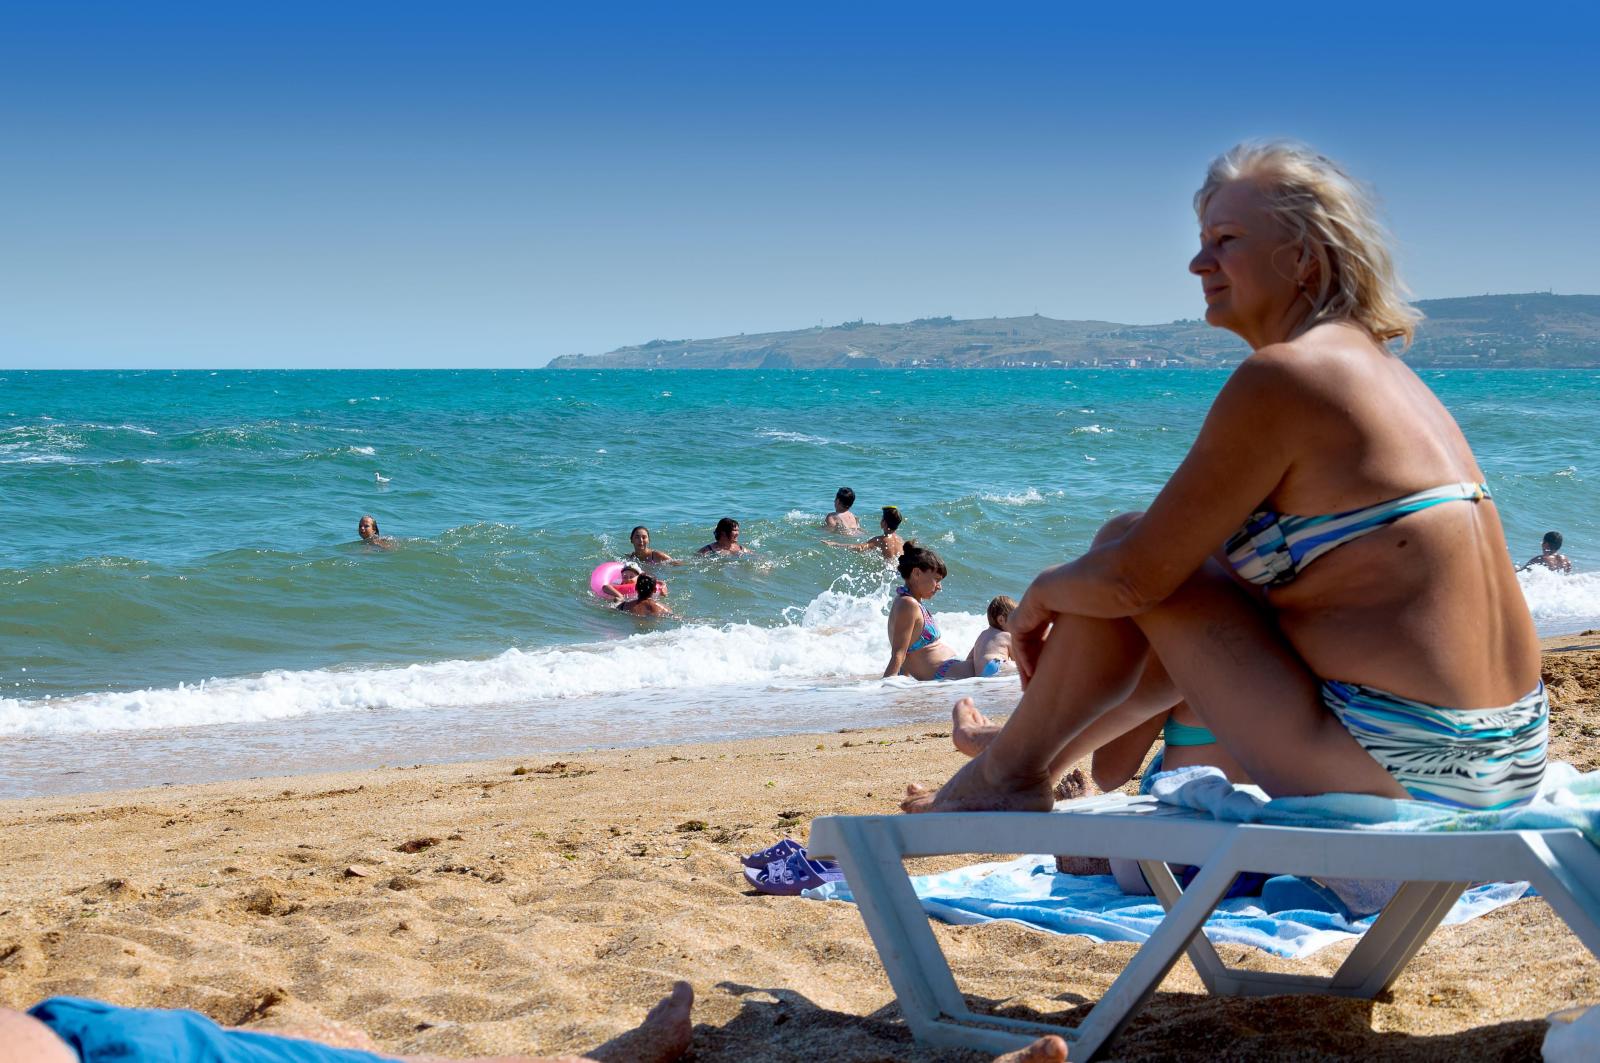 Прекрасный пляж и чистая вода: топ-3 пляжа в Крыму, которые оценят туристы по достоинству - image 2